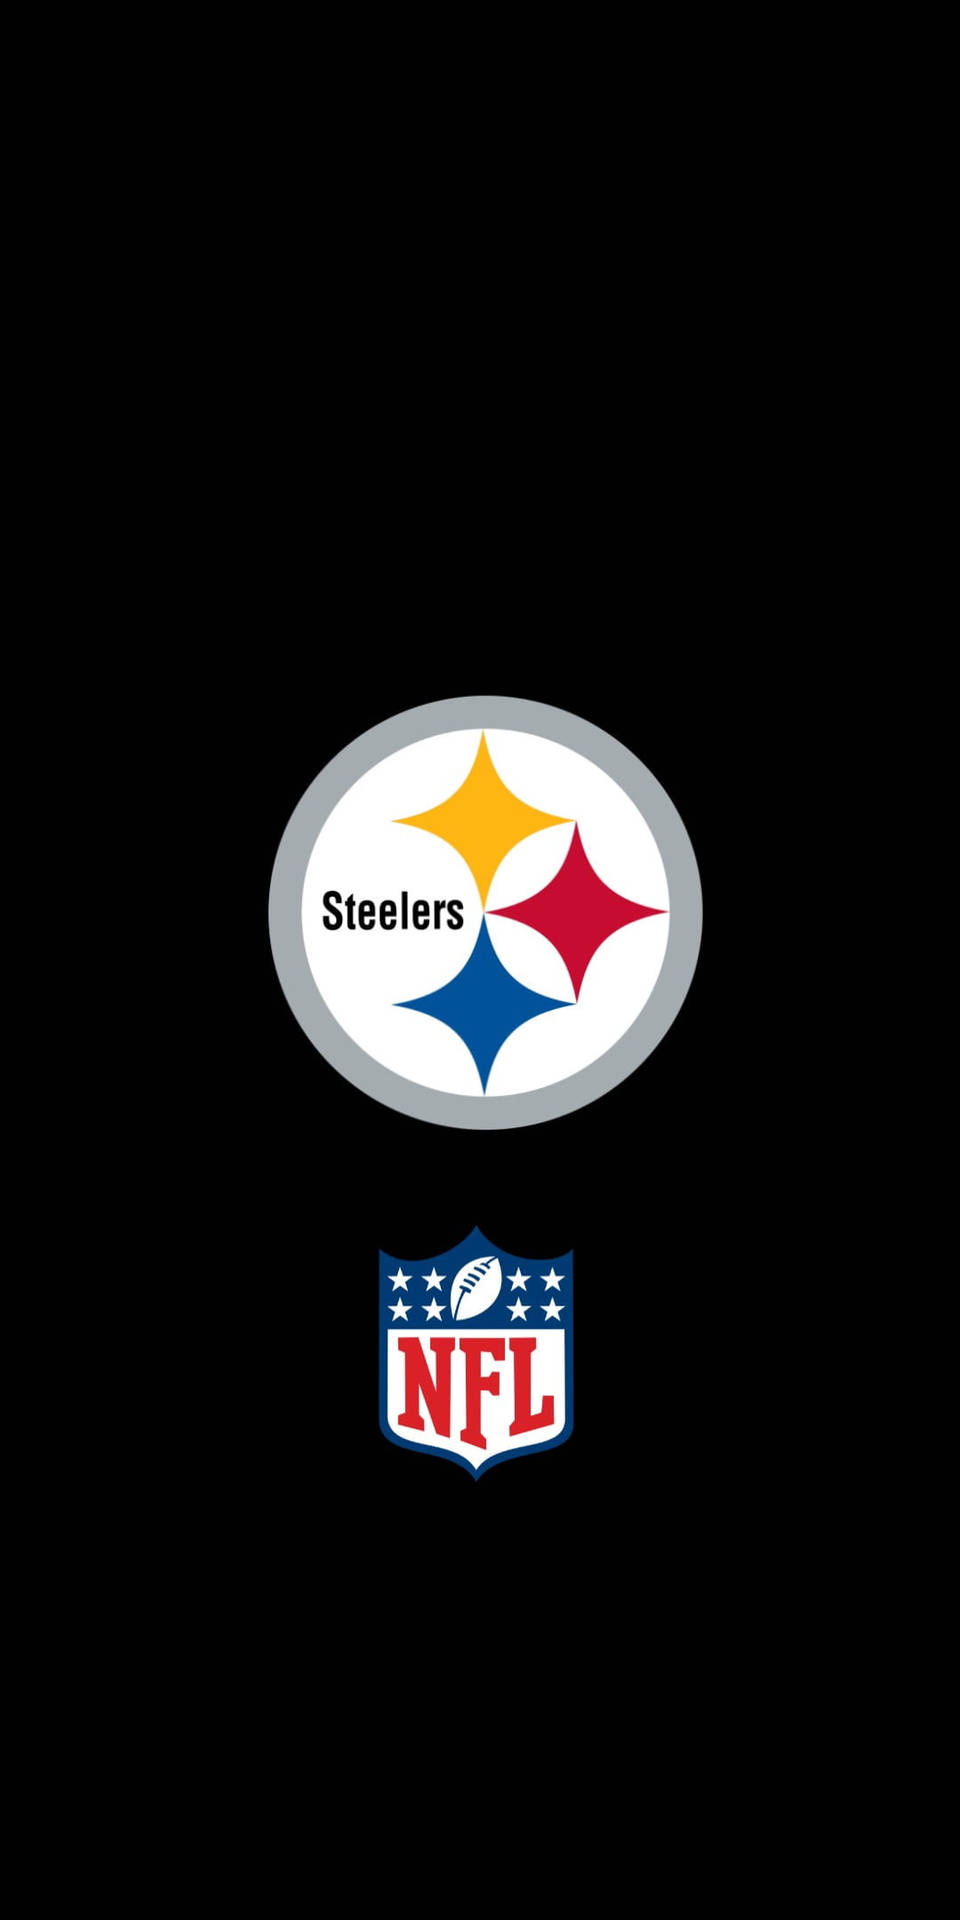 Simple Pittsburgh Steelers NFL Team Logo Wallpaper